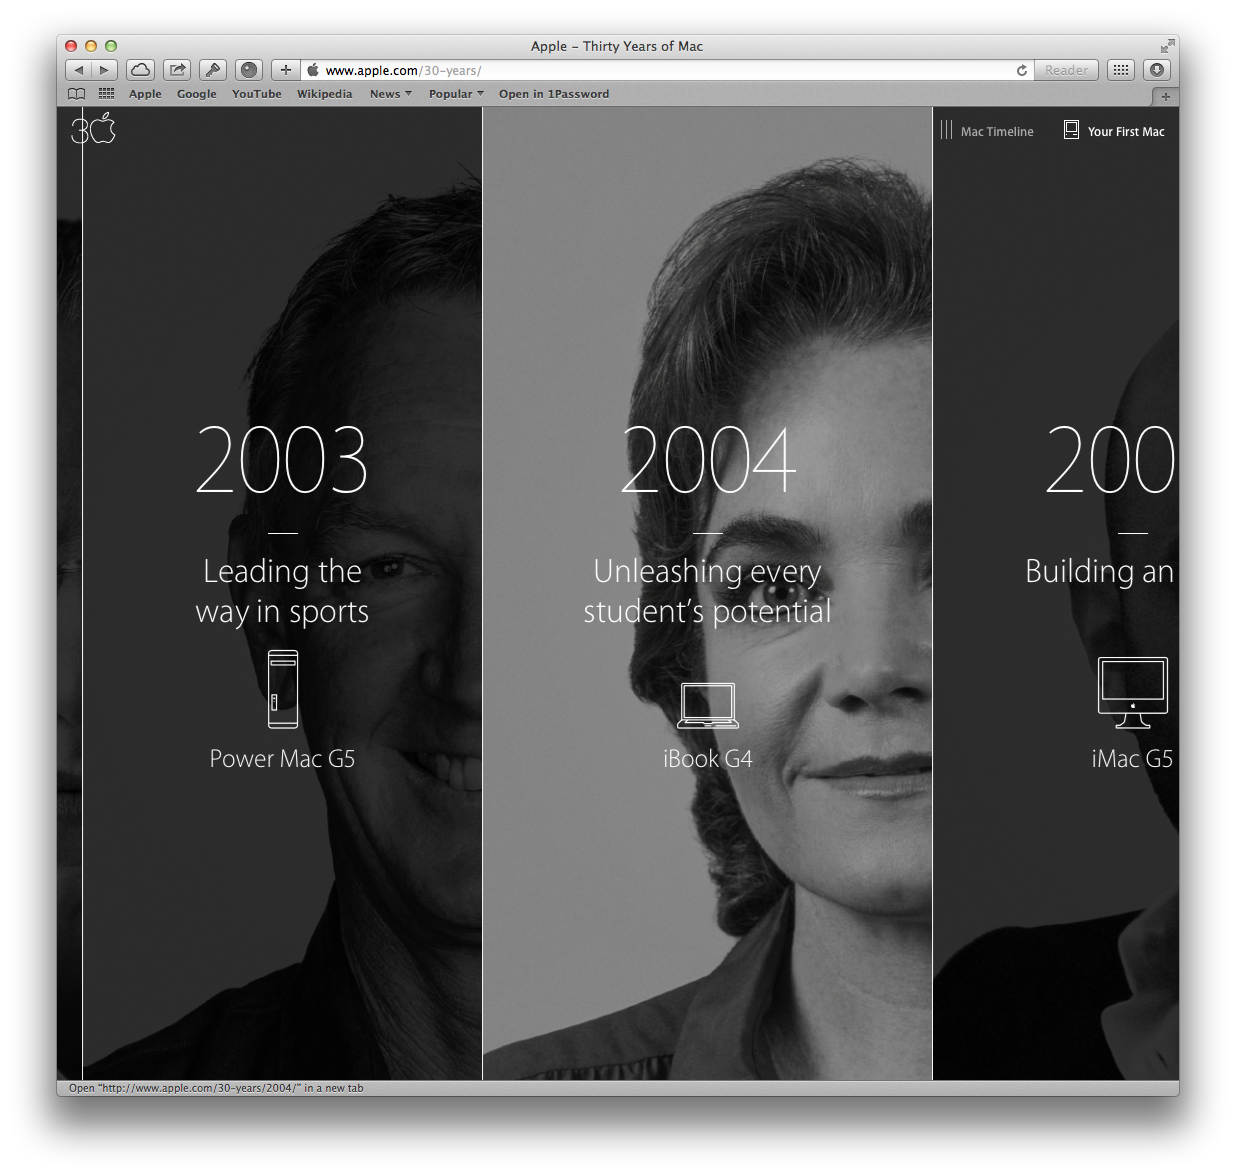 Apple 30 years of Mac (timeline)